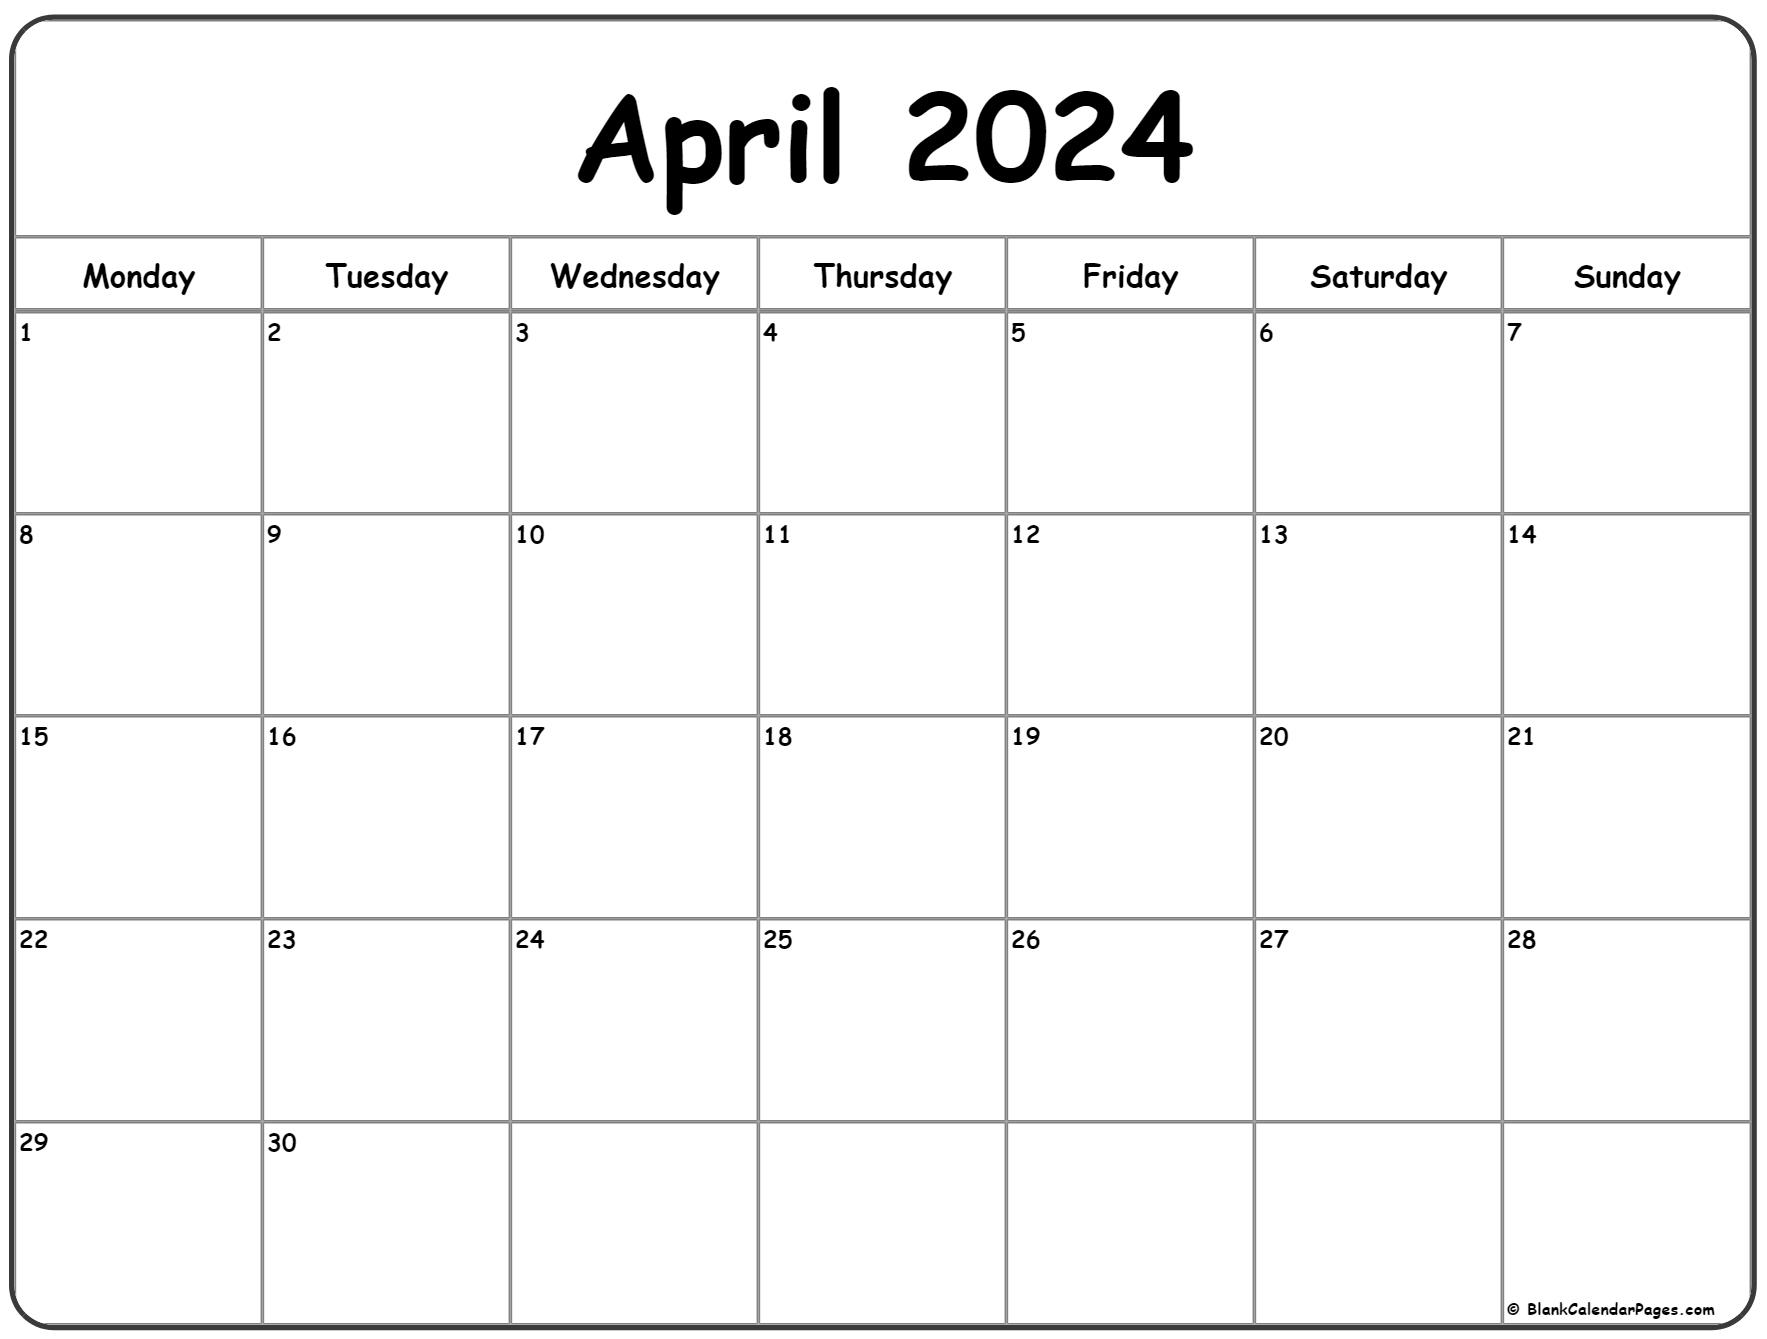 April 2024 Monday calendar. Monday to Sunday